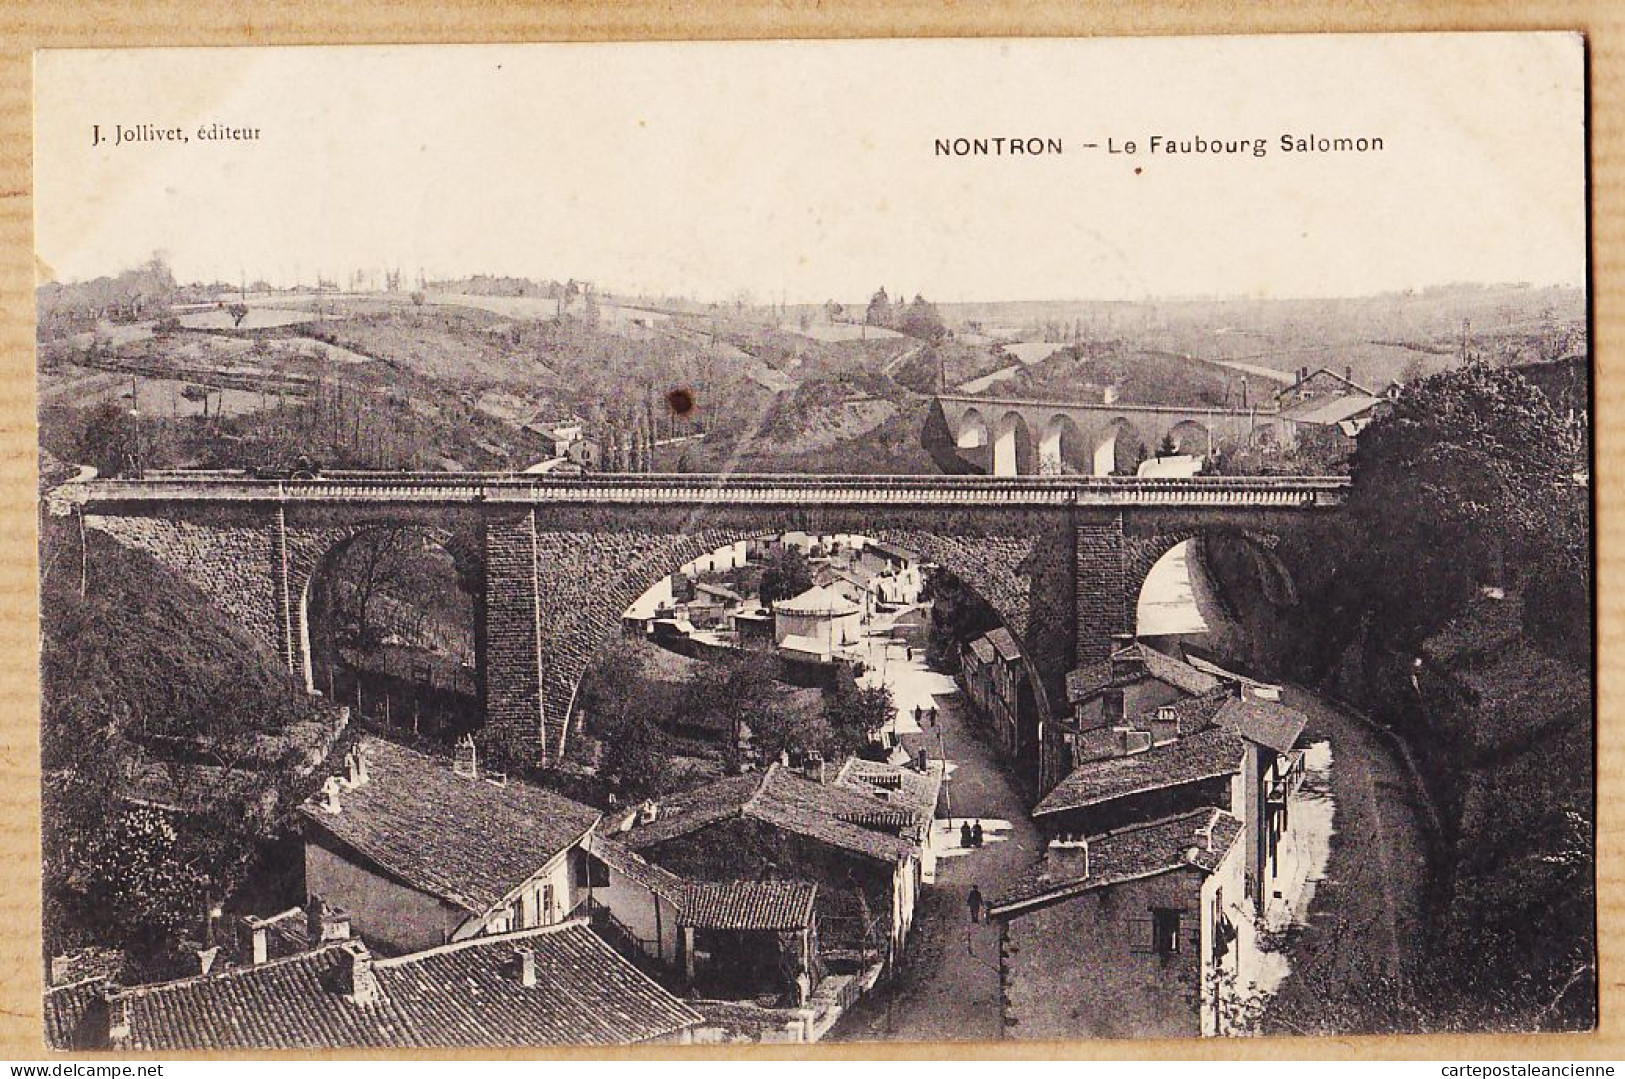 01208 / NONTRON (24) Le Faubourg SALOMON 1907 à VENARD Saint-Anatoly Lanta- JOLLIVET Dordogne - Nontron